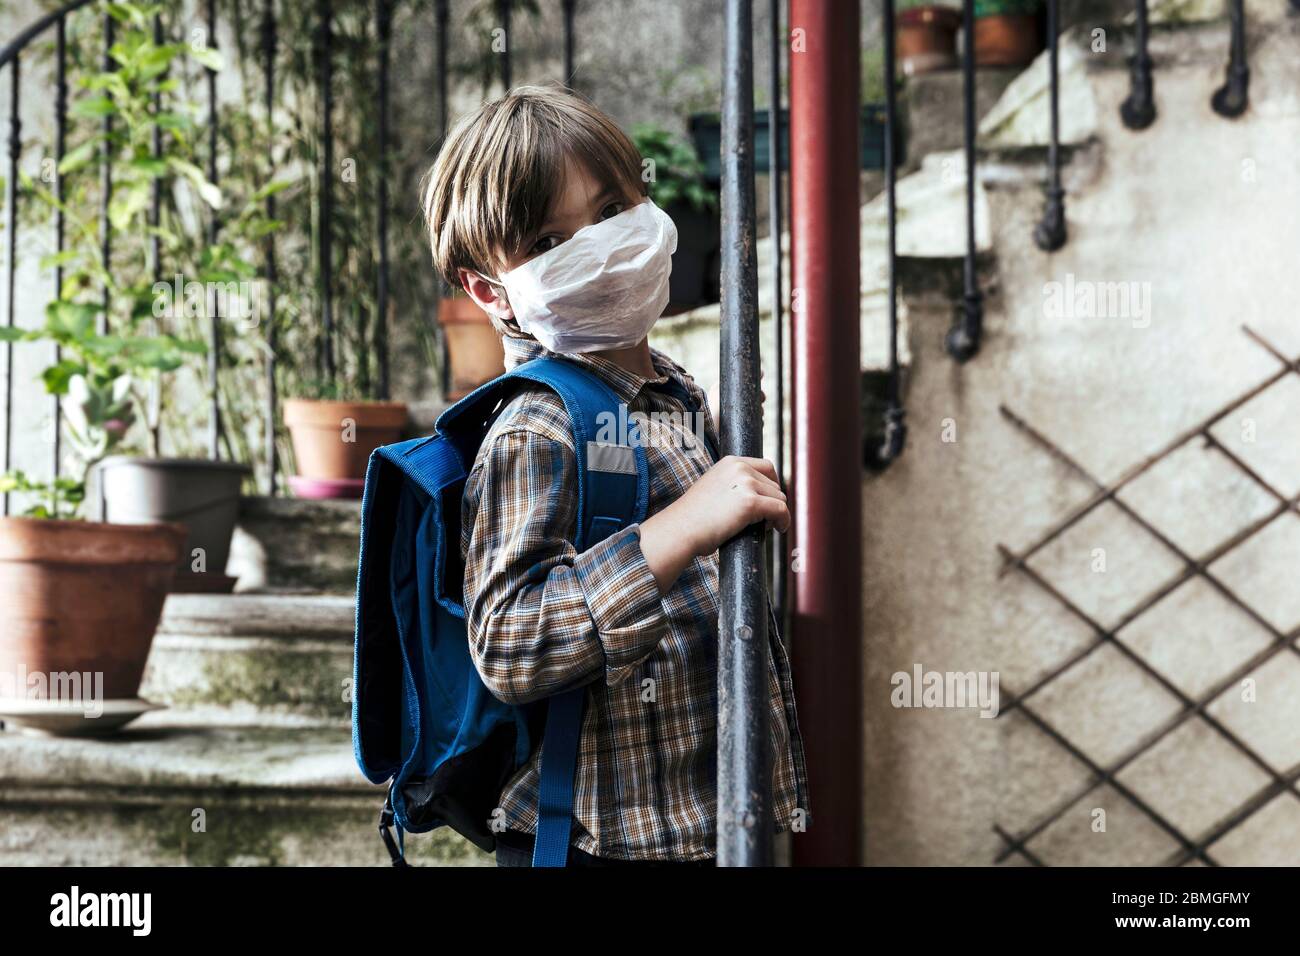 Focolaio di coronavirus, Covid-19: Illustrazione sulla riapertura delle scuole. Scolaretto con zaino e maschera protettiva, il 30 aprile 2020 Foto Stock